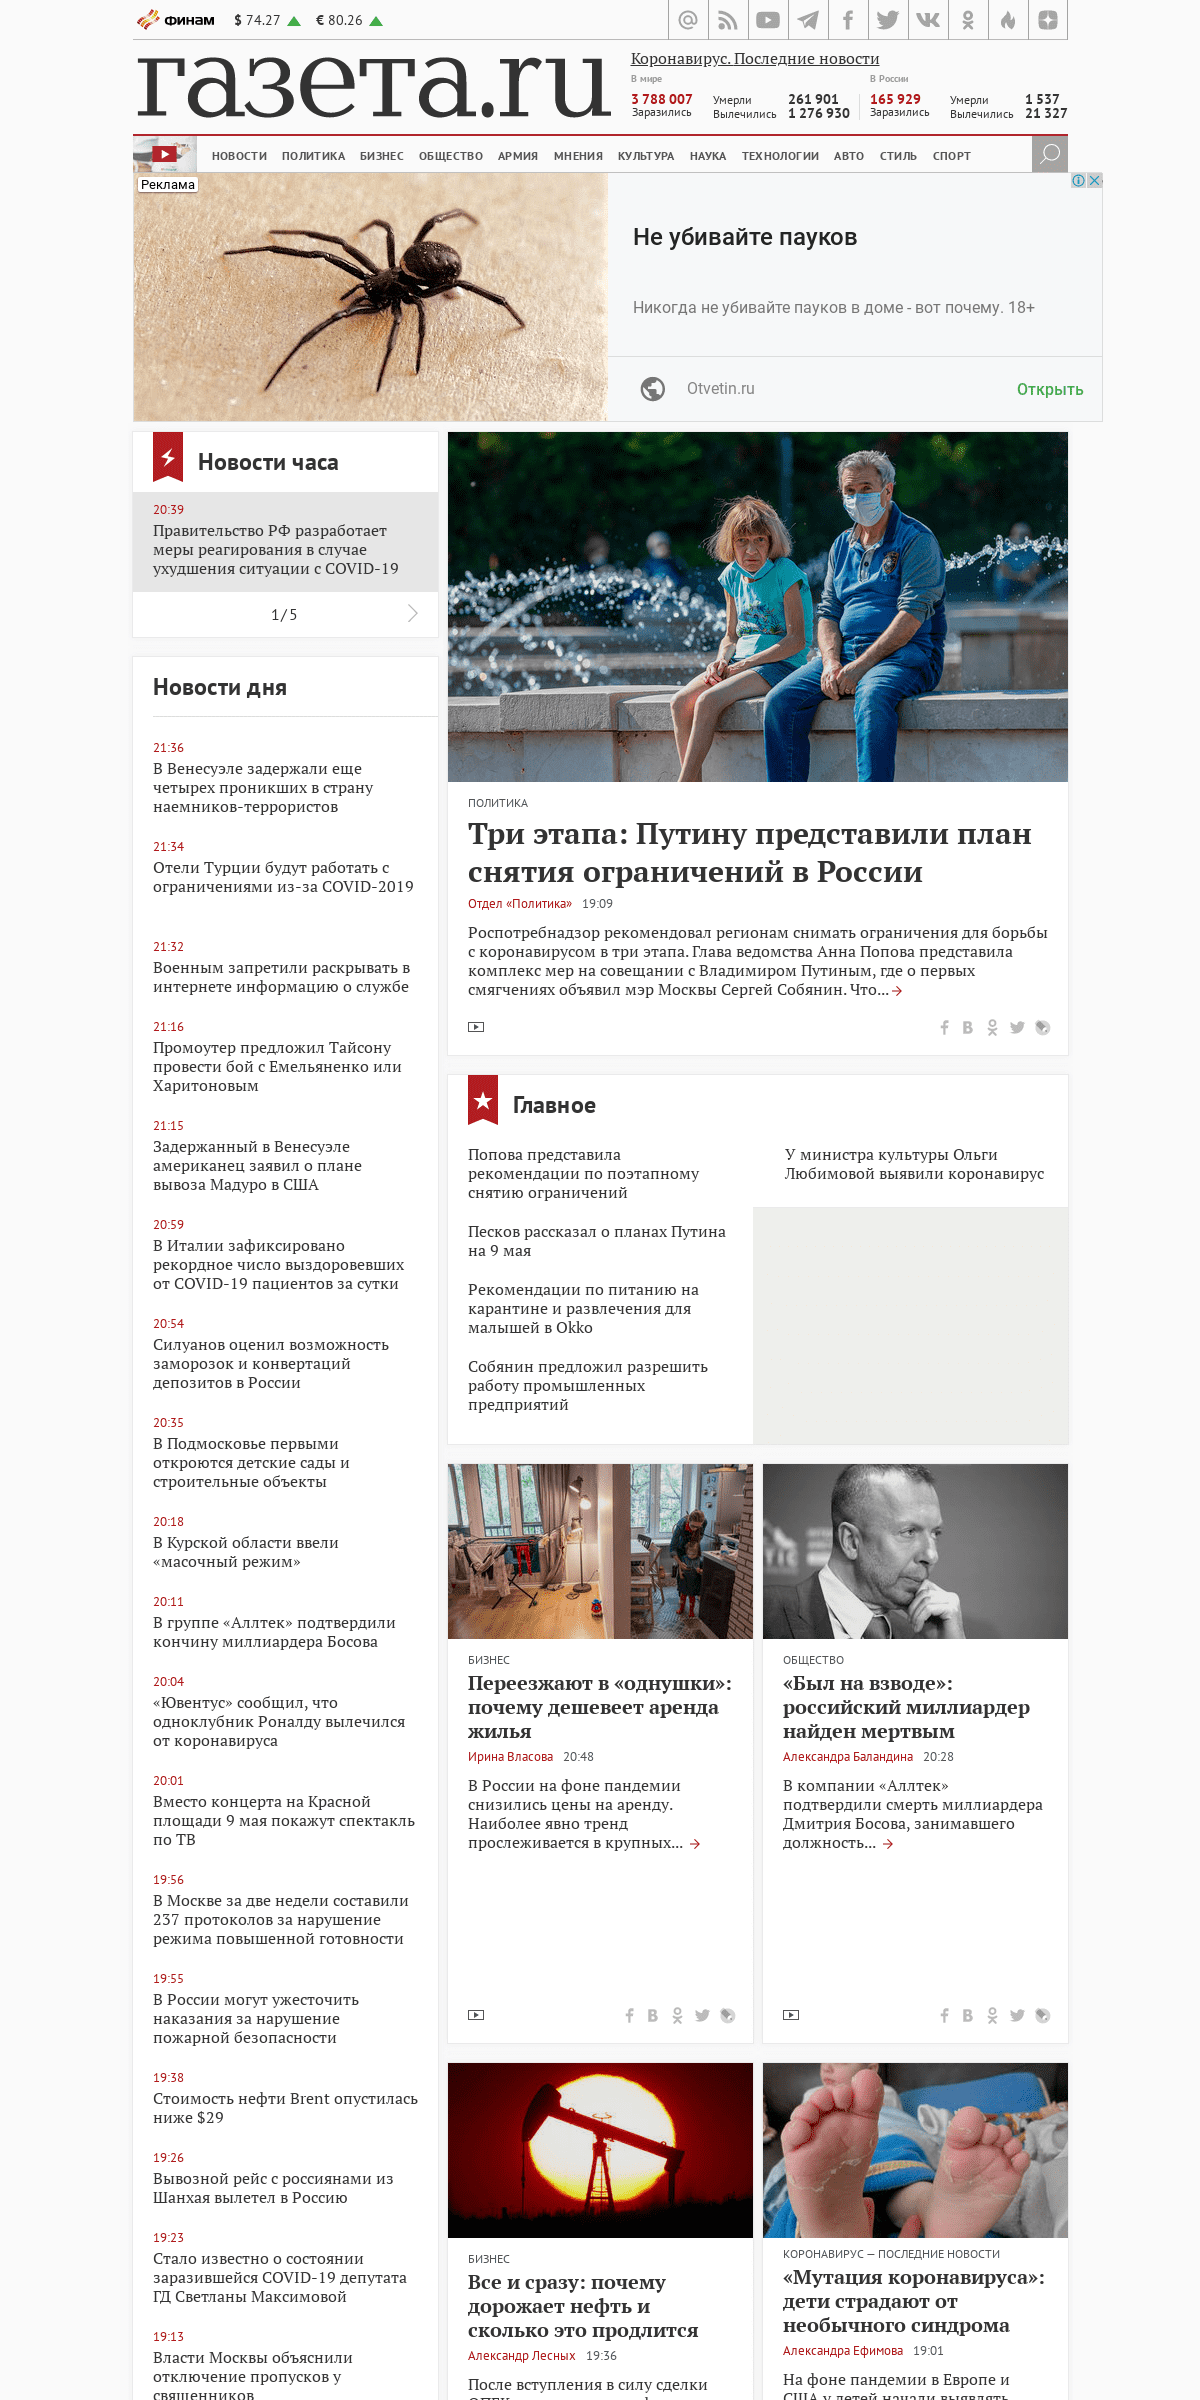 A complete backup of gazeta.ru